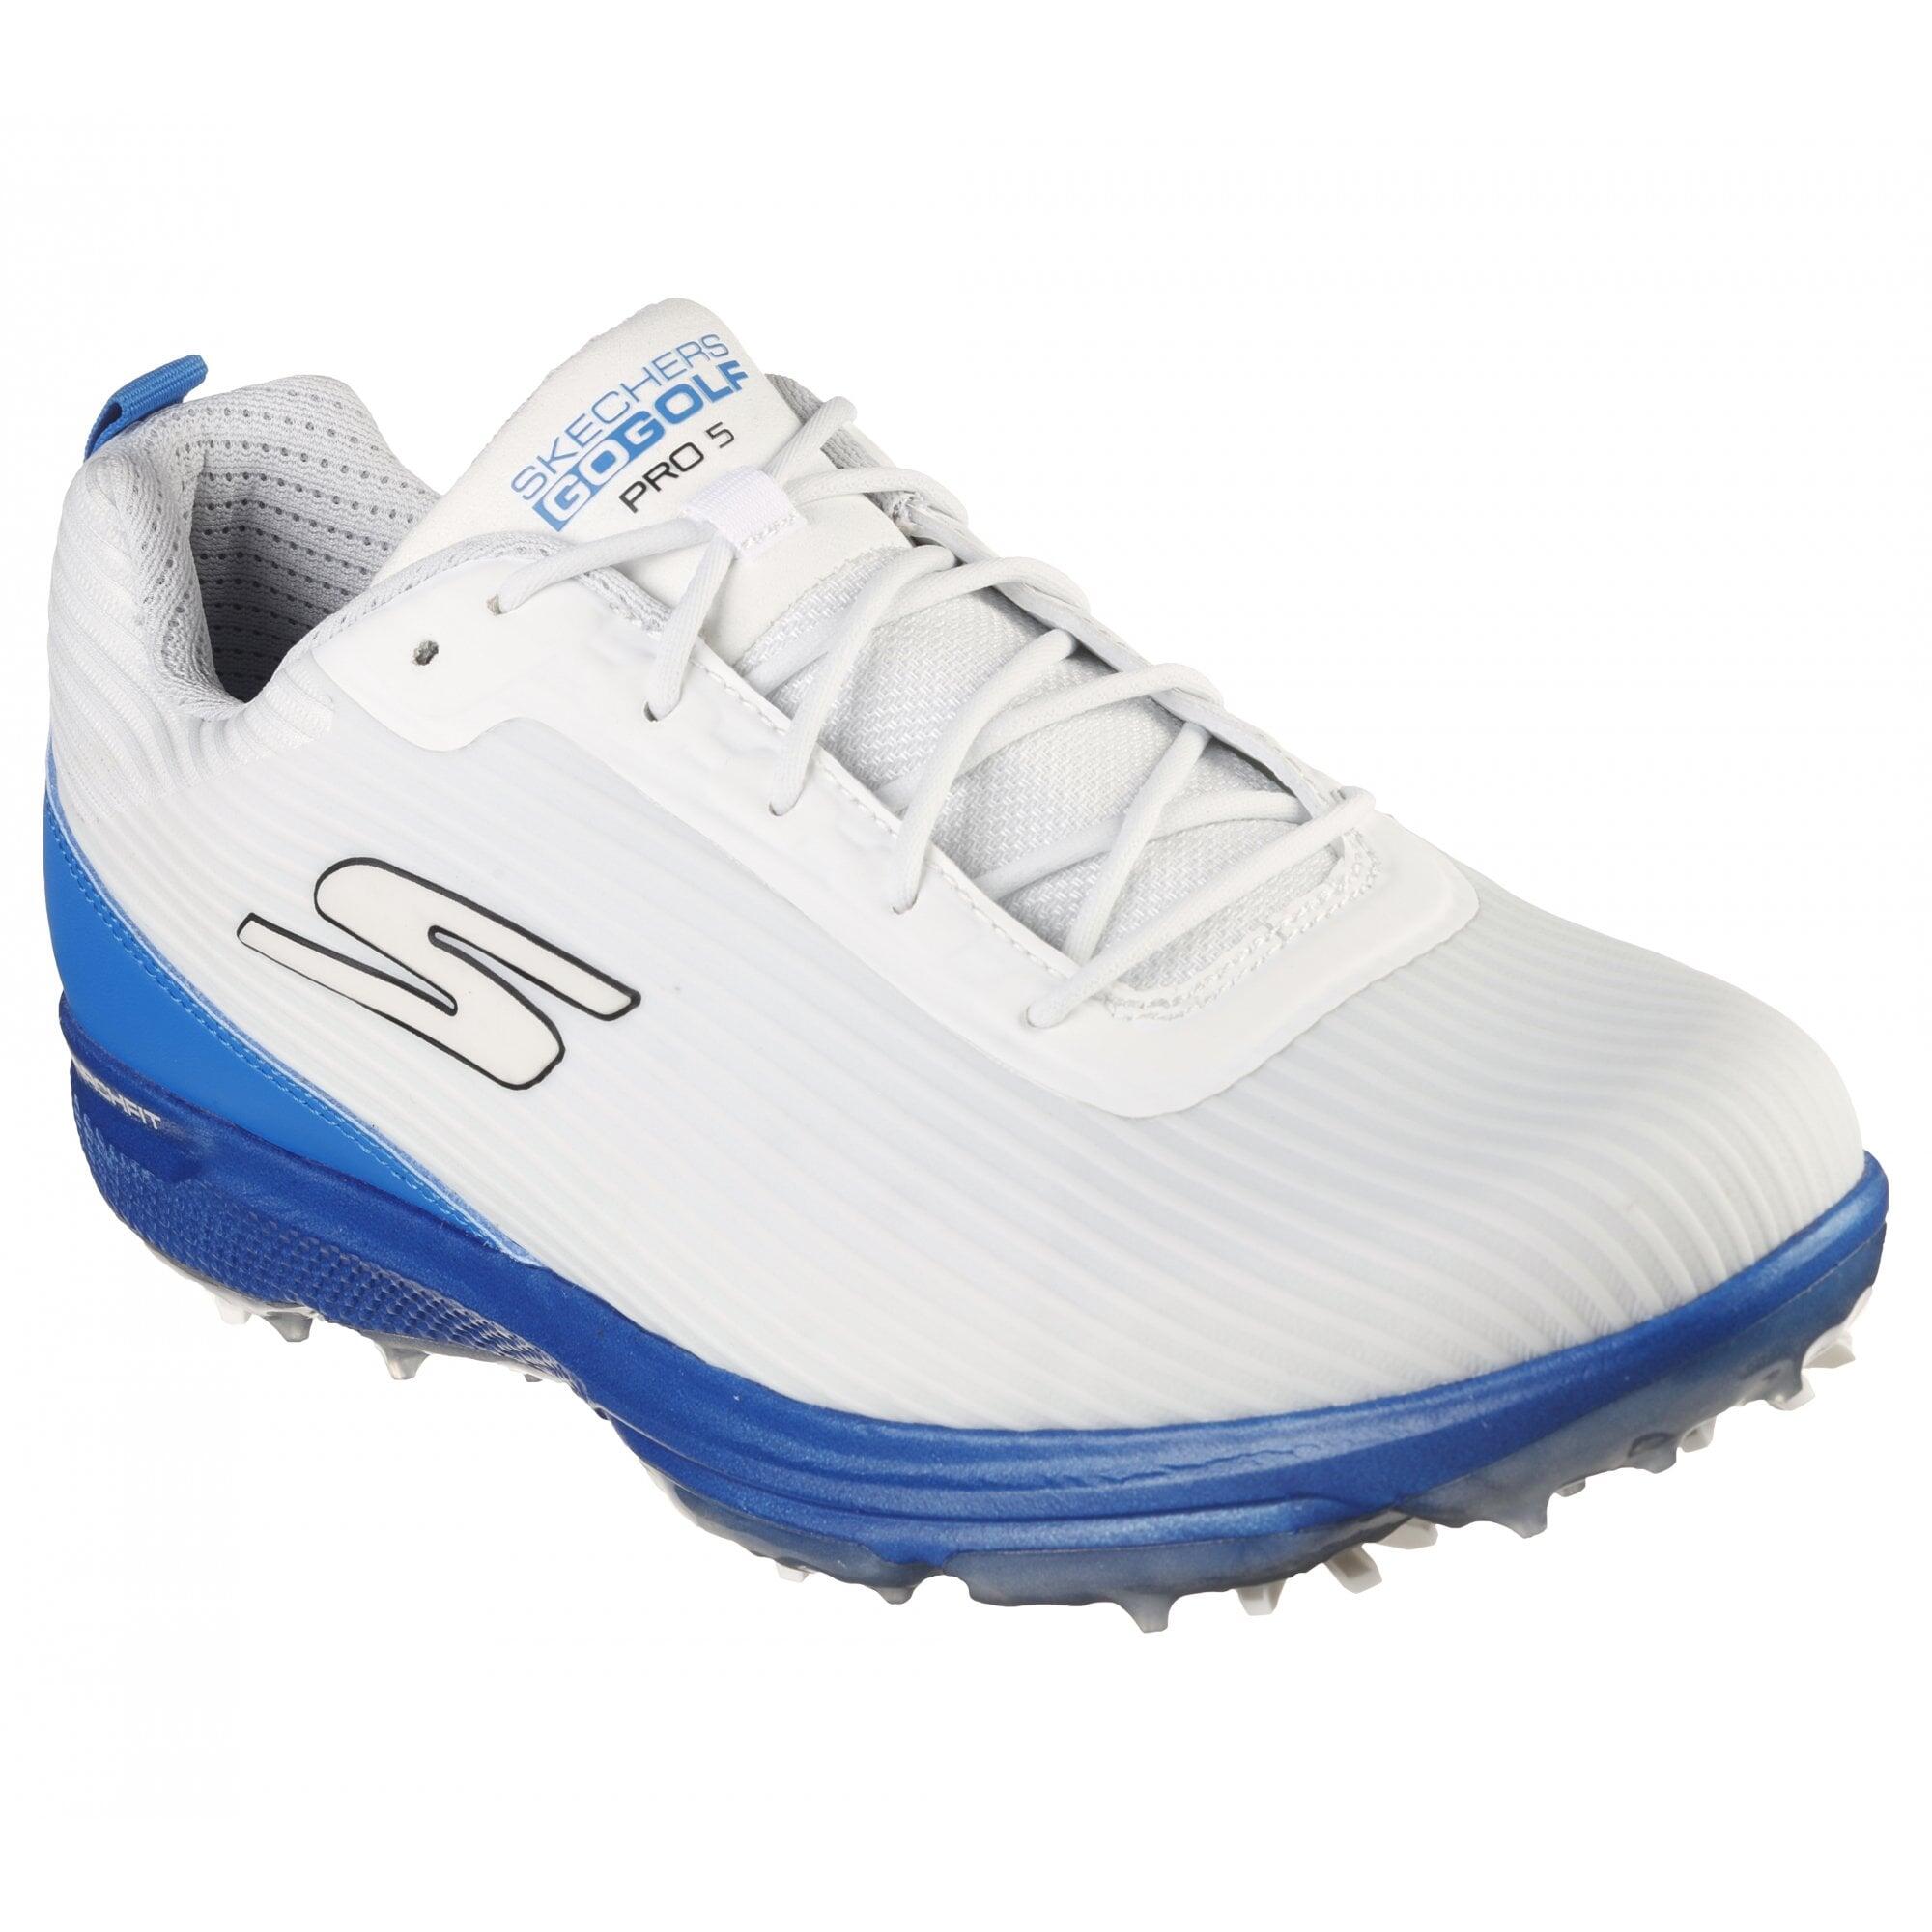 SKECHERS Skechers GO GOLF PRO 5 HYPER Golf Shoes - White/Blue